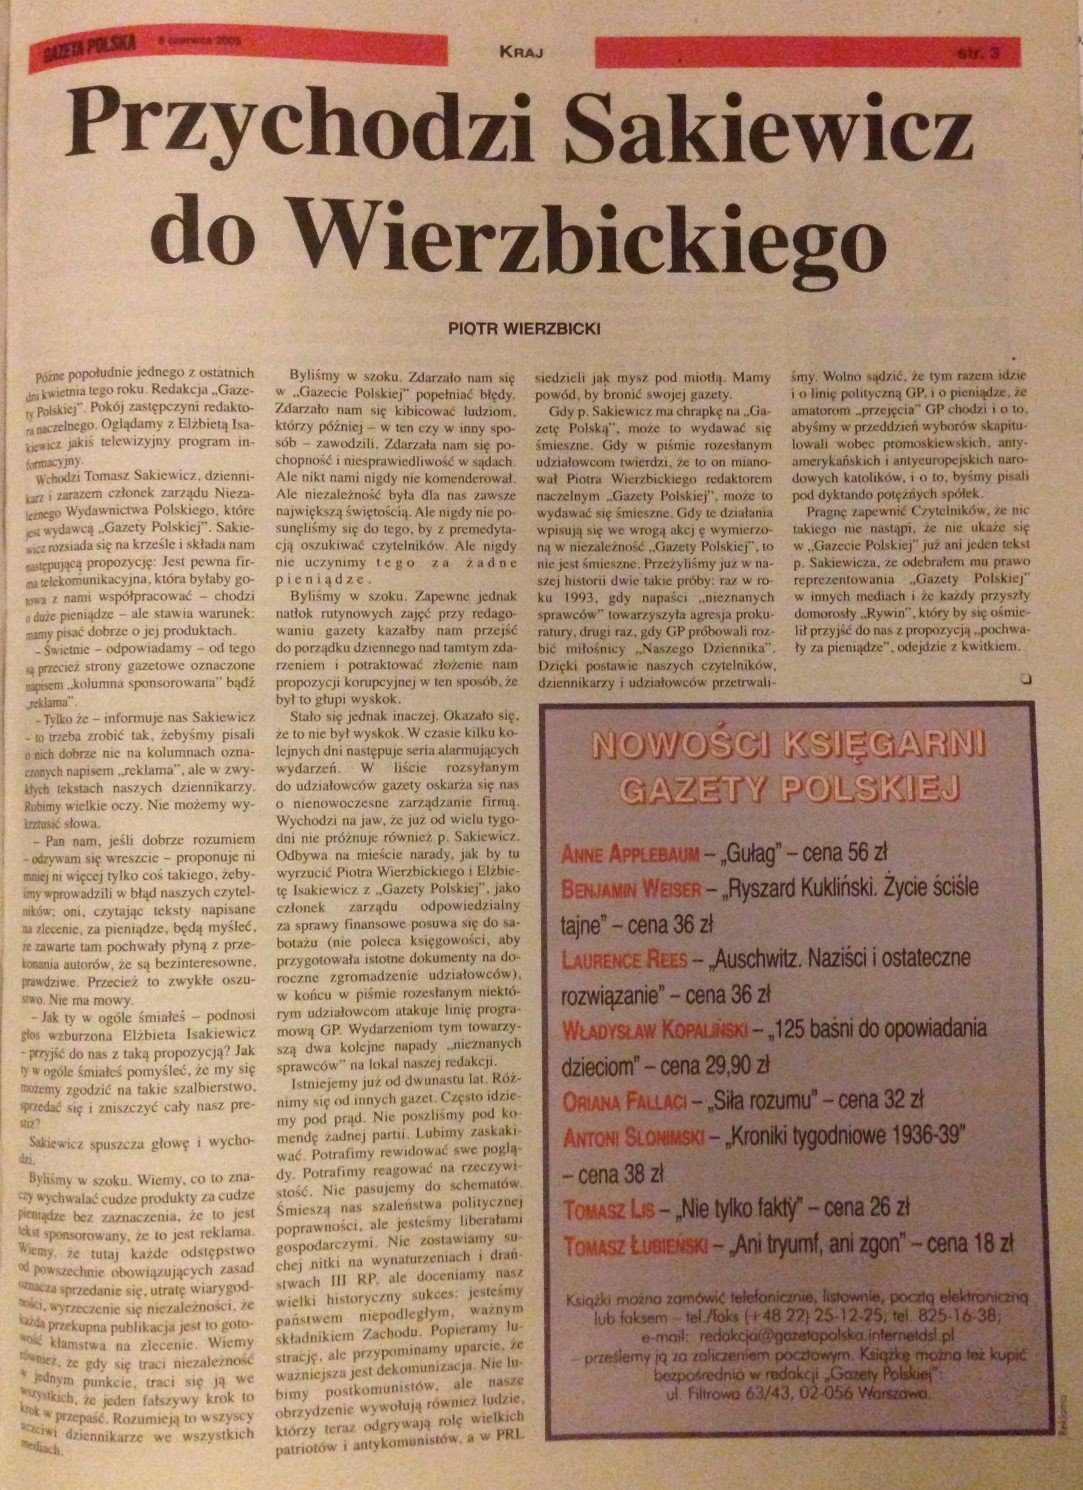 Oryginalne wydanie "Gazety Polskiej", które nie trafiło do kiosków.